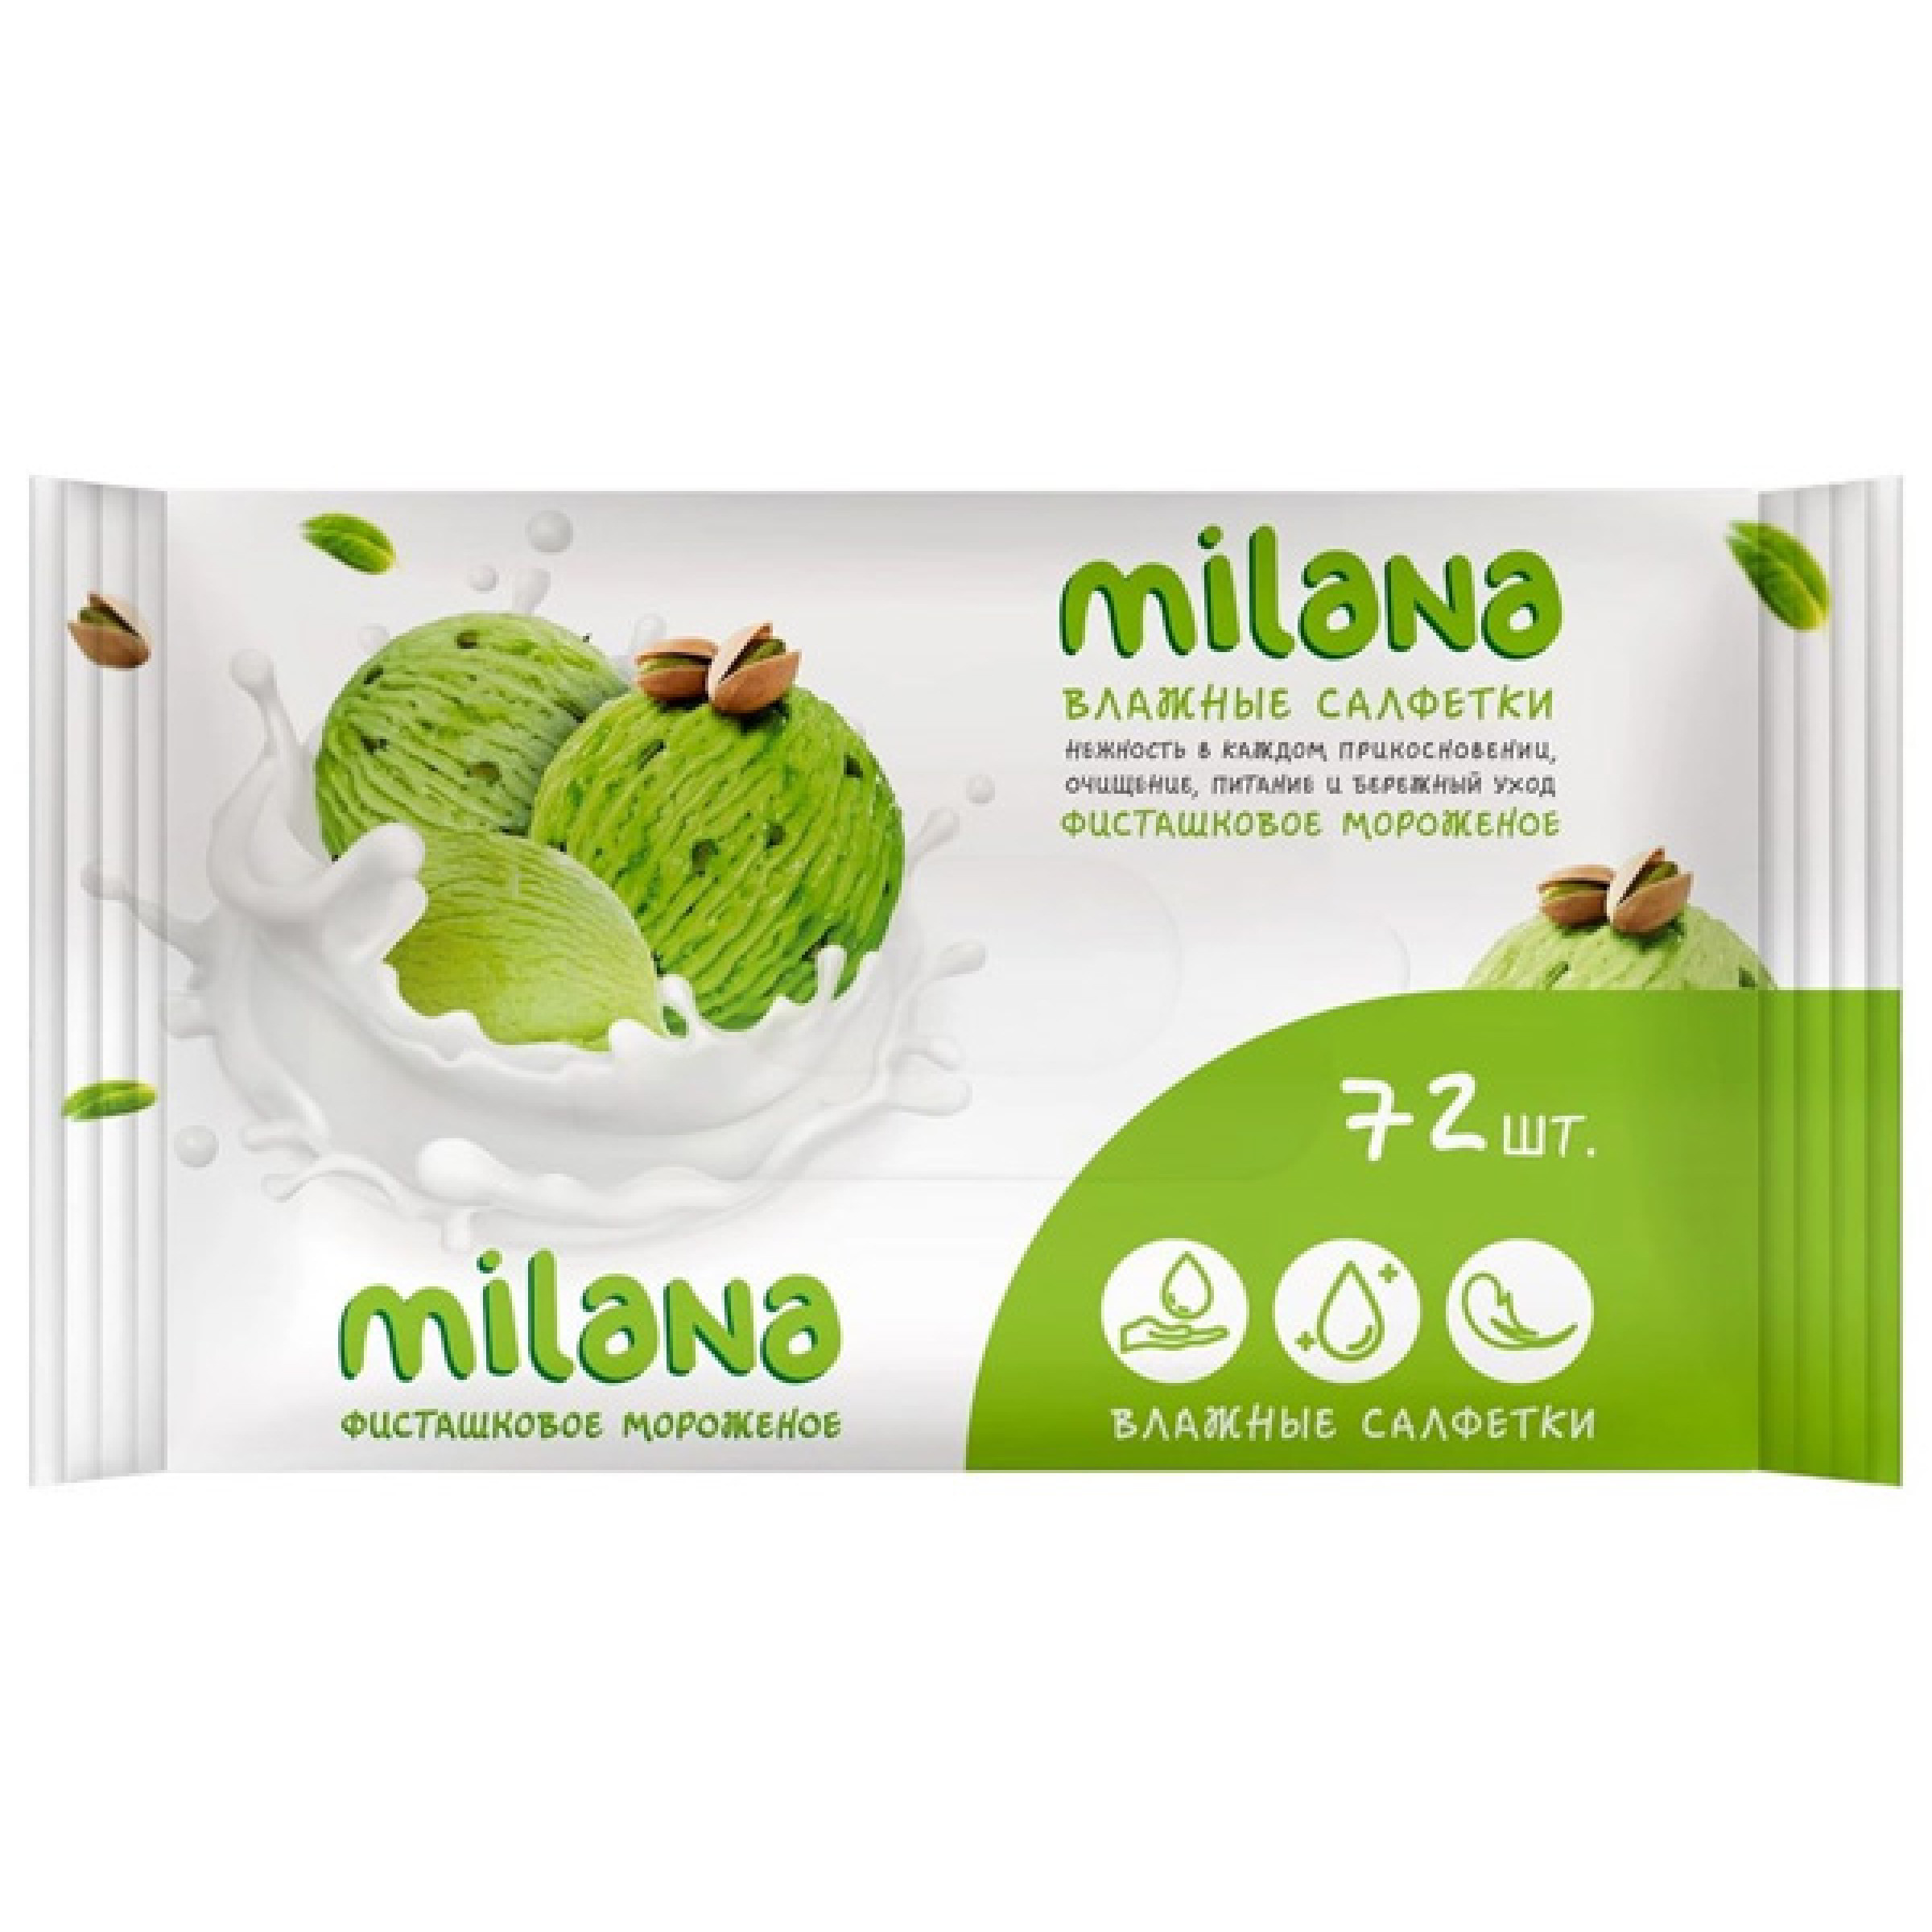 Влажные салфетки GRASS Milana Фисташковое мороженое антибактериальные, 72 шт